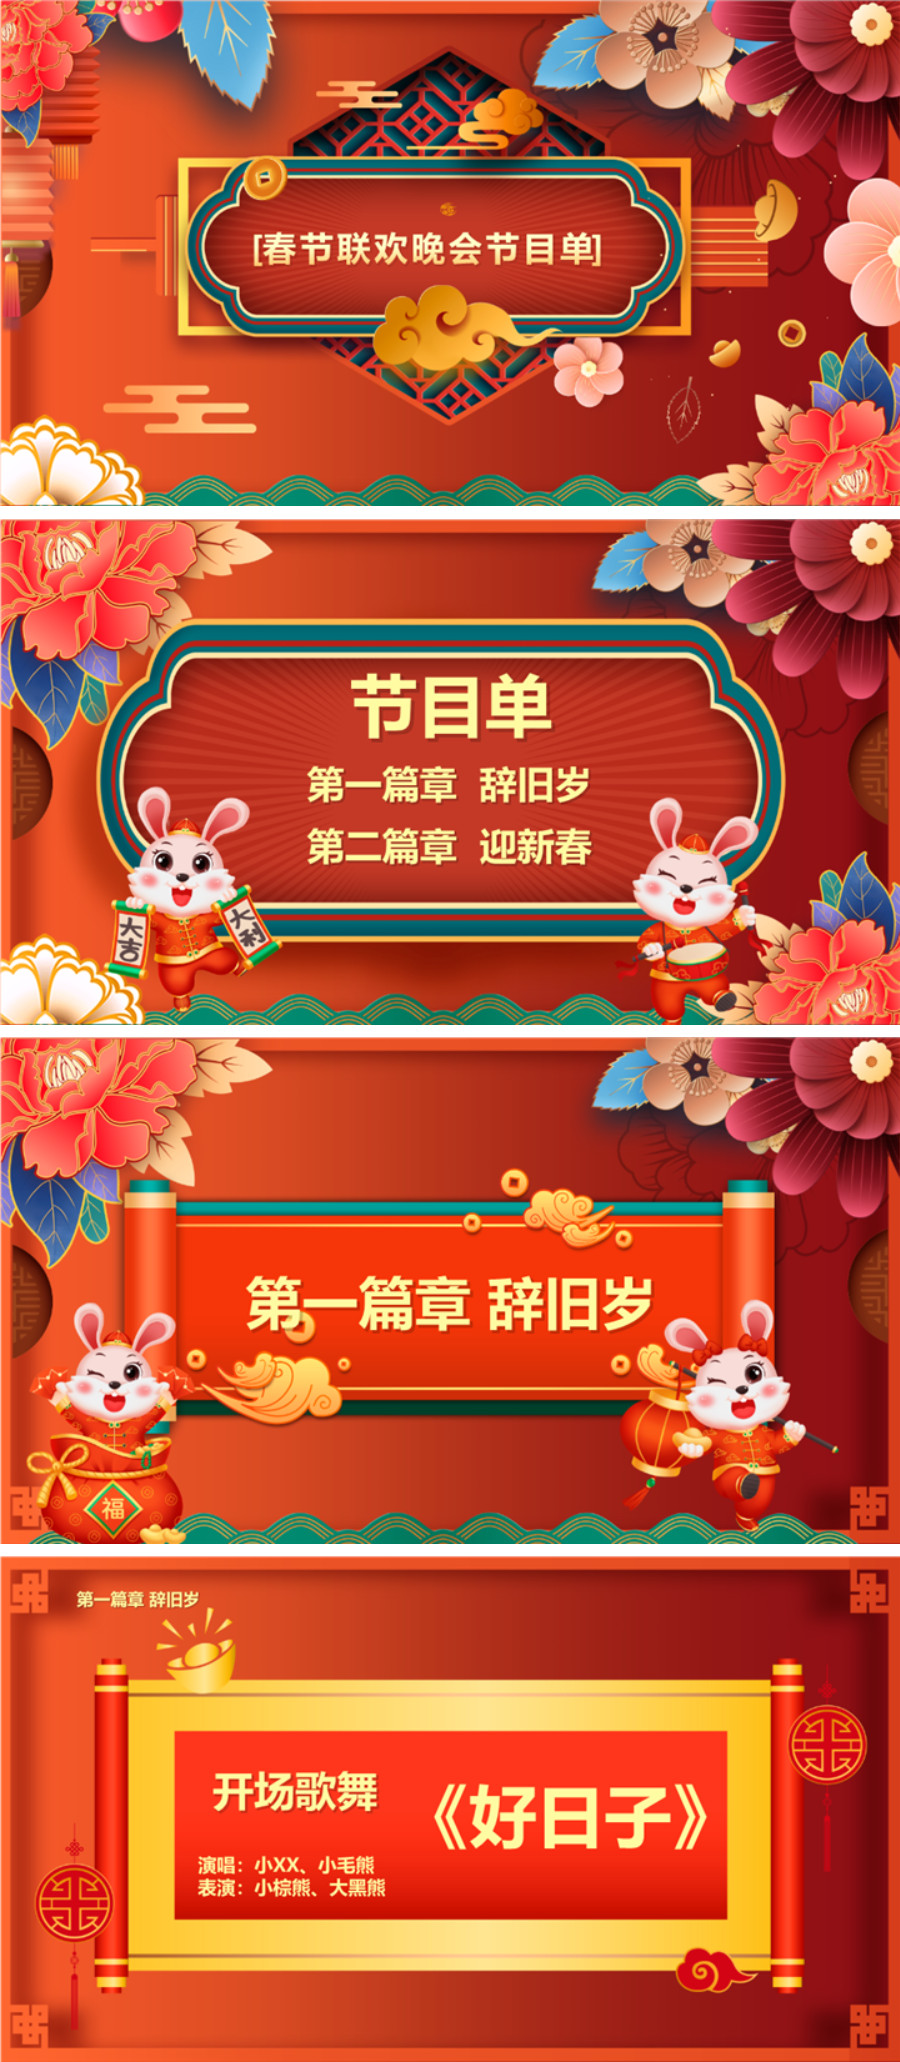 春节联欢晚会节目名单ppt模板